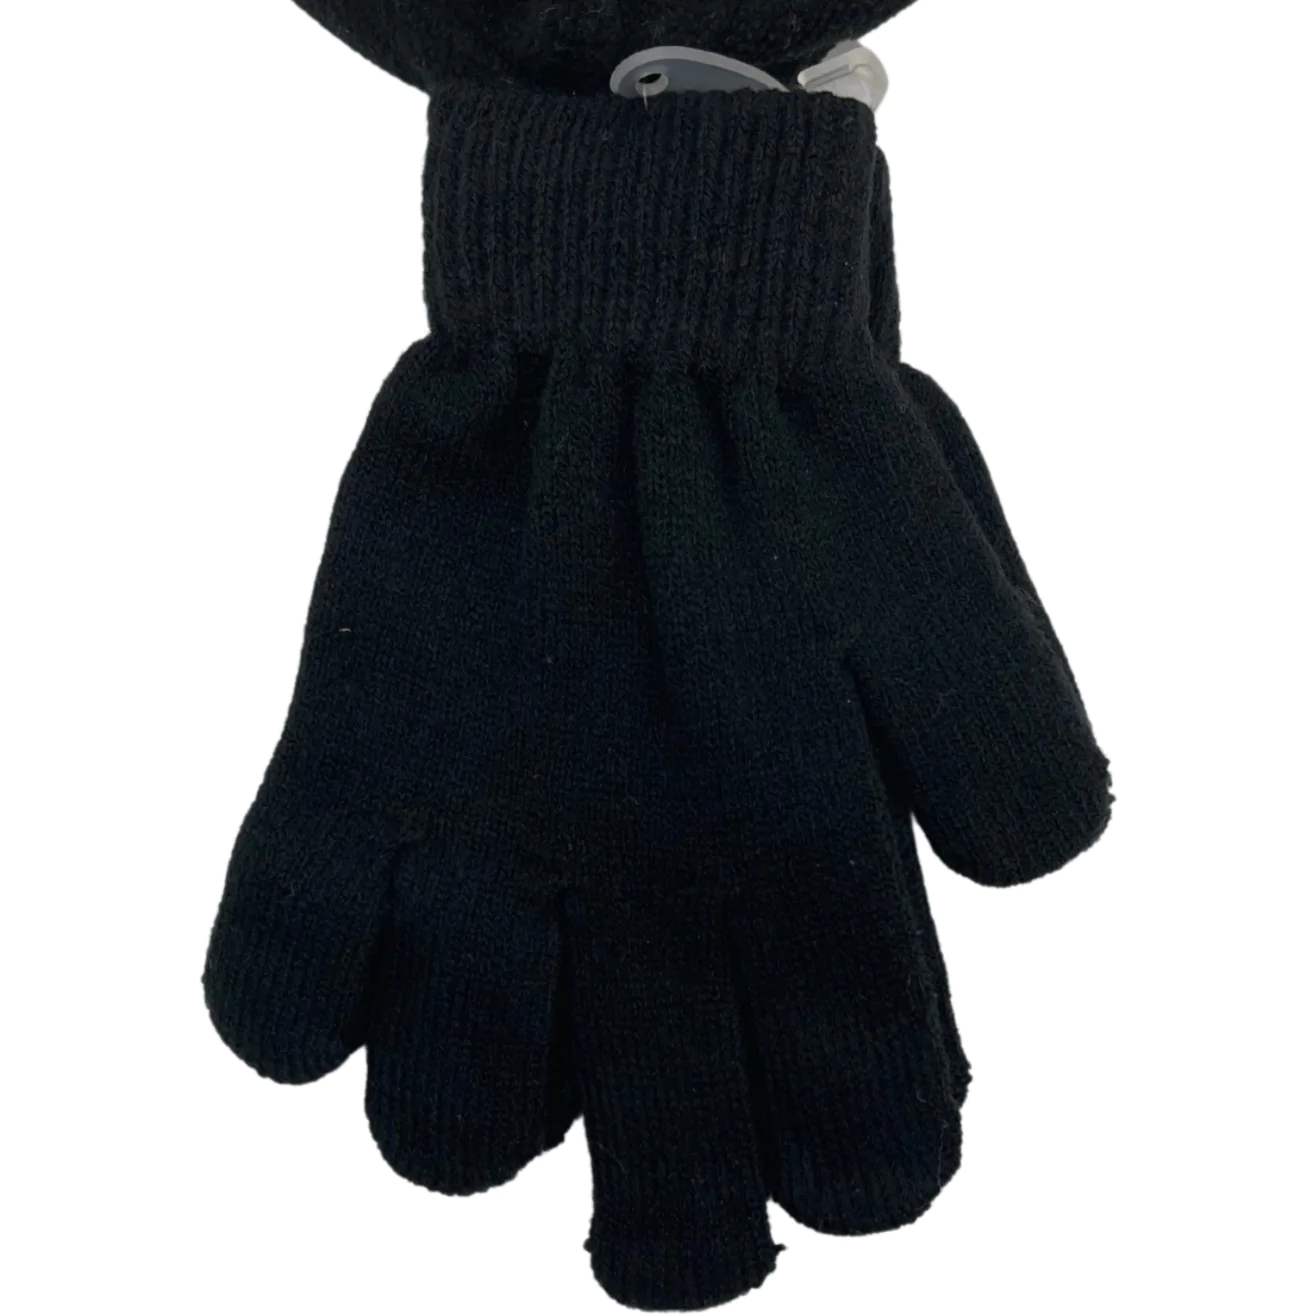 Children's Winter Hat and Gloves Set / Black / Reflective Hat / Kid's Winter Toque / Size 8-20